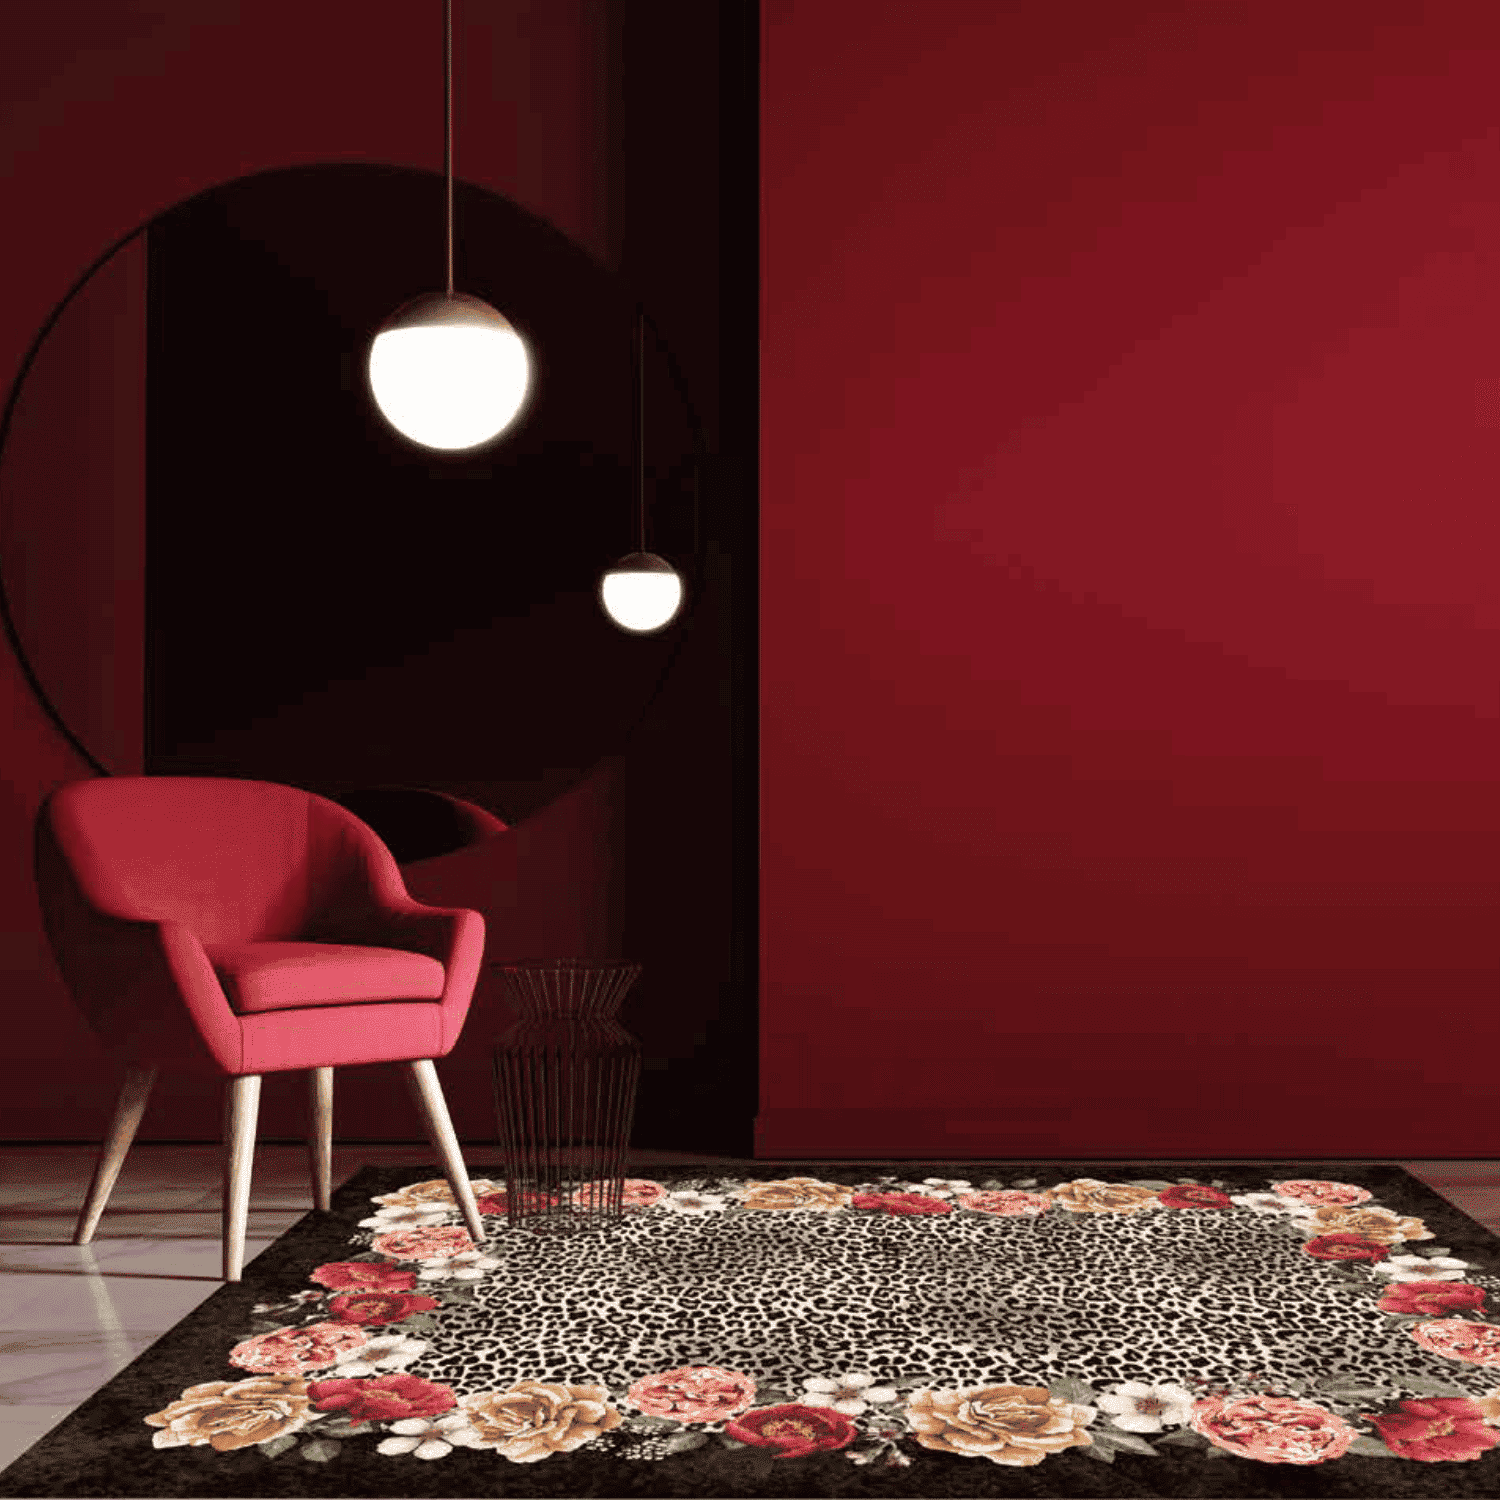 frida-tappeto-arredo-emozioni-artista-scuro-fiorato-multicolor-leopardato